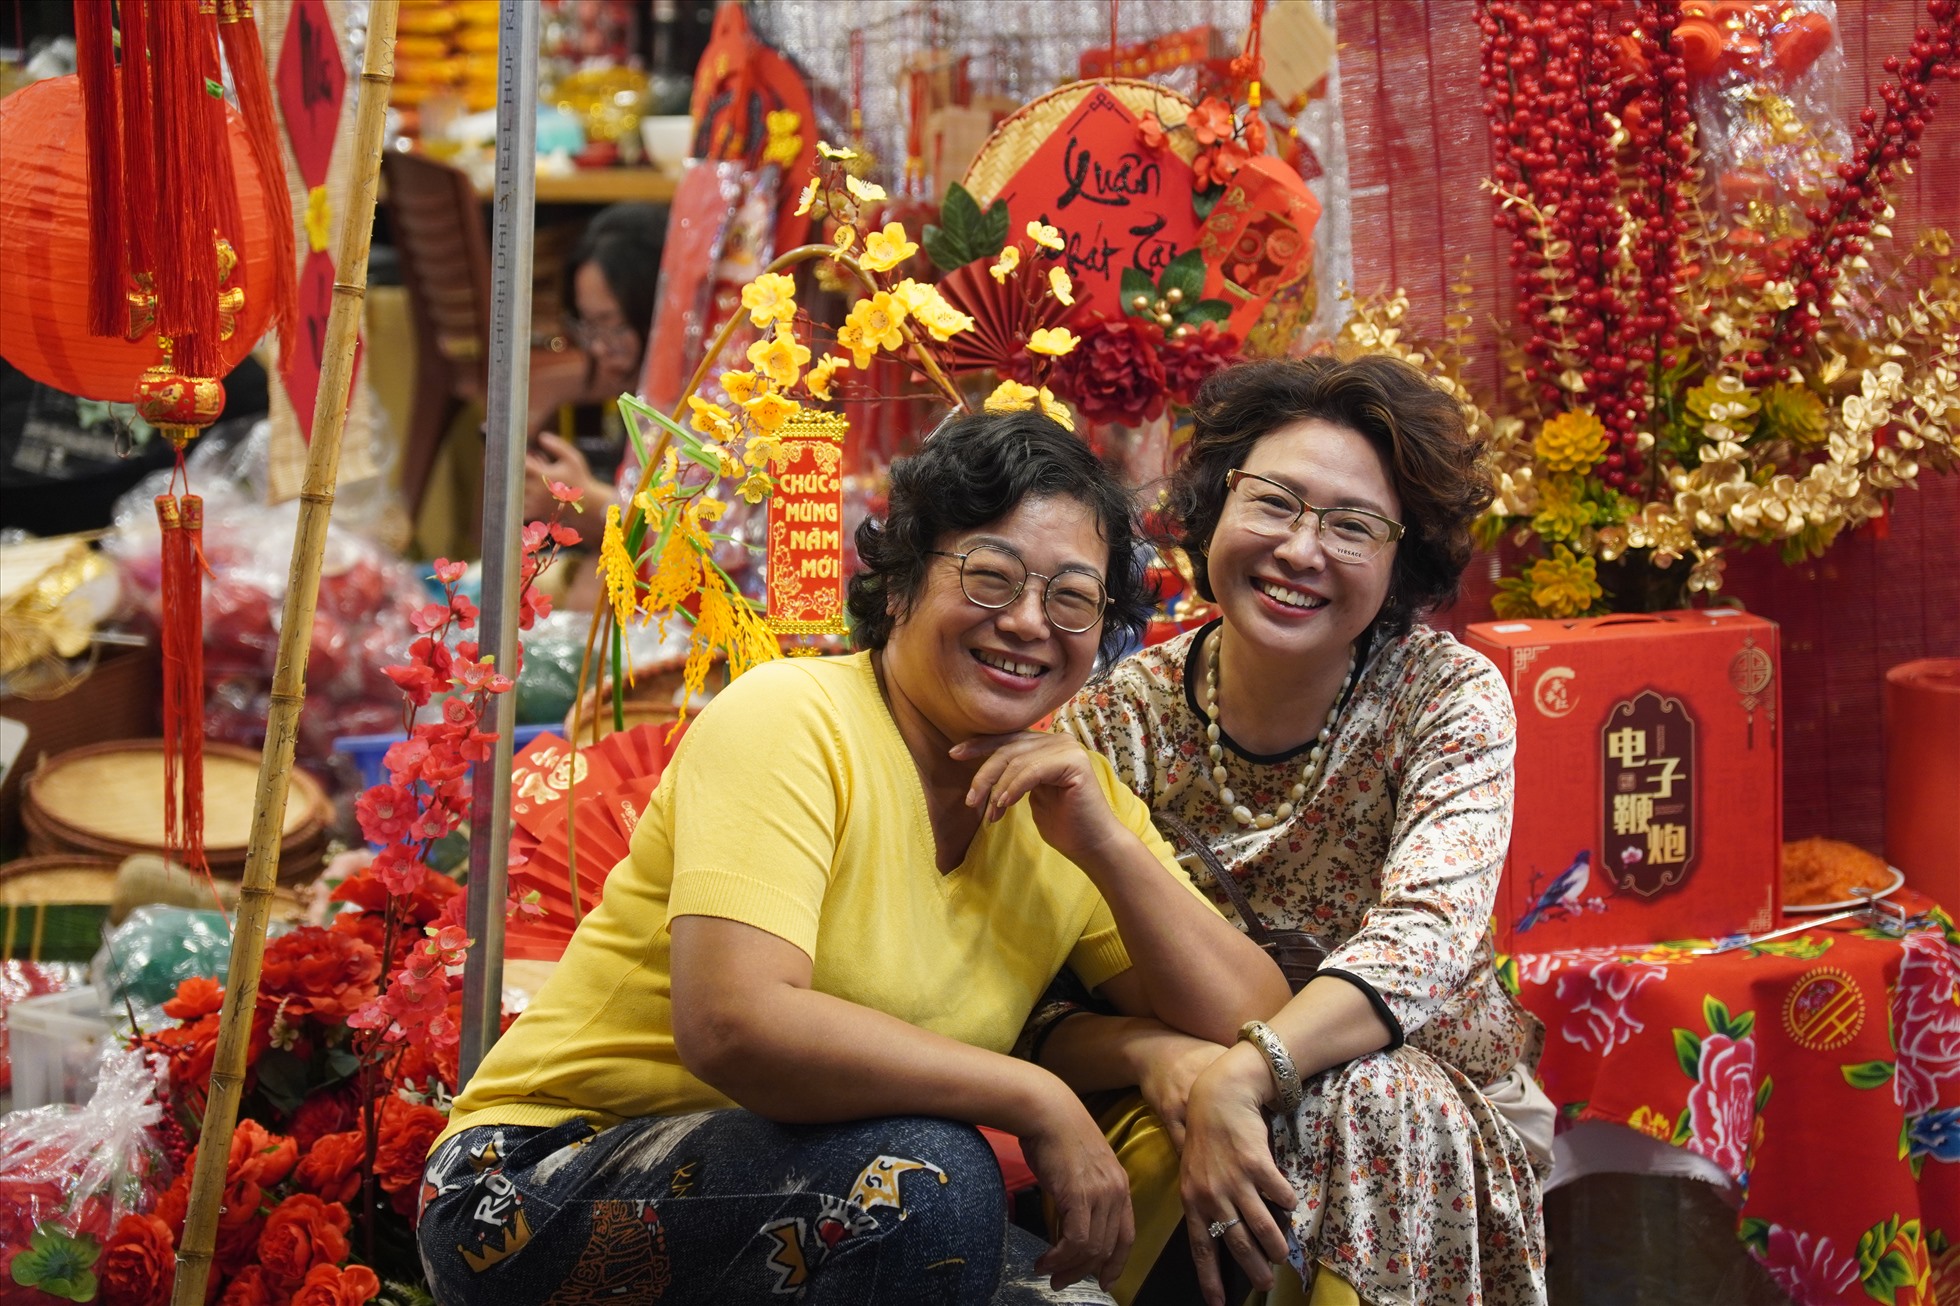 Chợ hoa Hàng Lược đã trở thành một nét sinh hoạt độc đáo của người dân Phố cổ nói riêng và người dân Hà Nội nói chung từ bao đời nay.